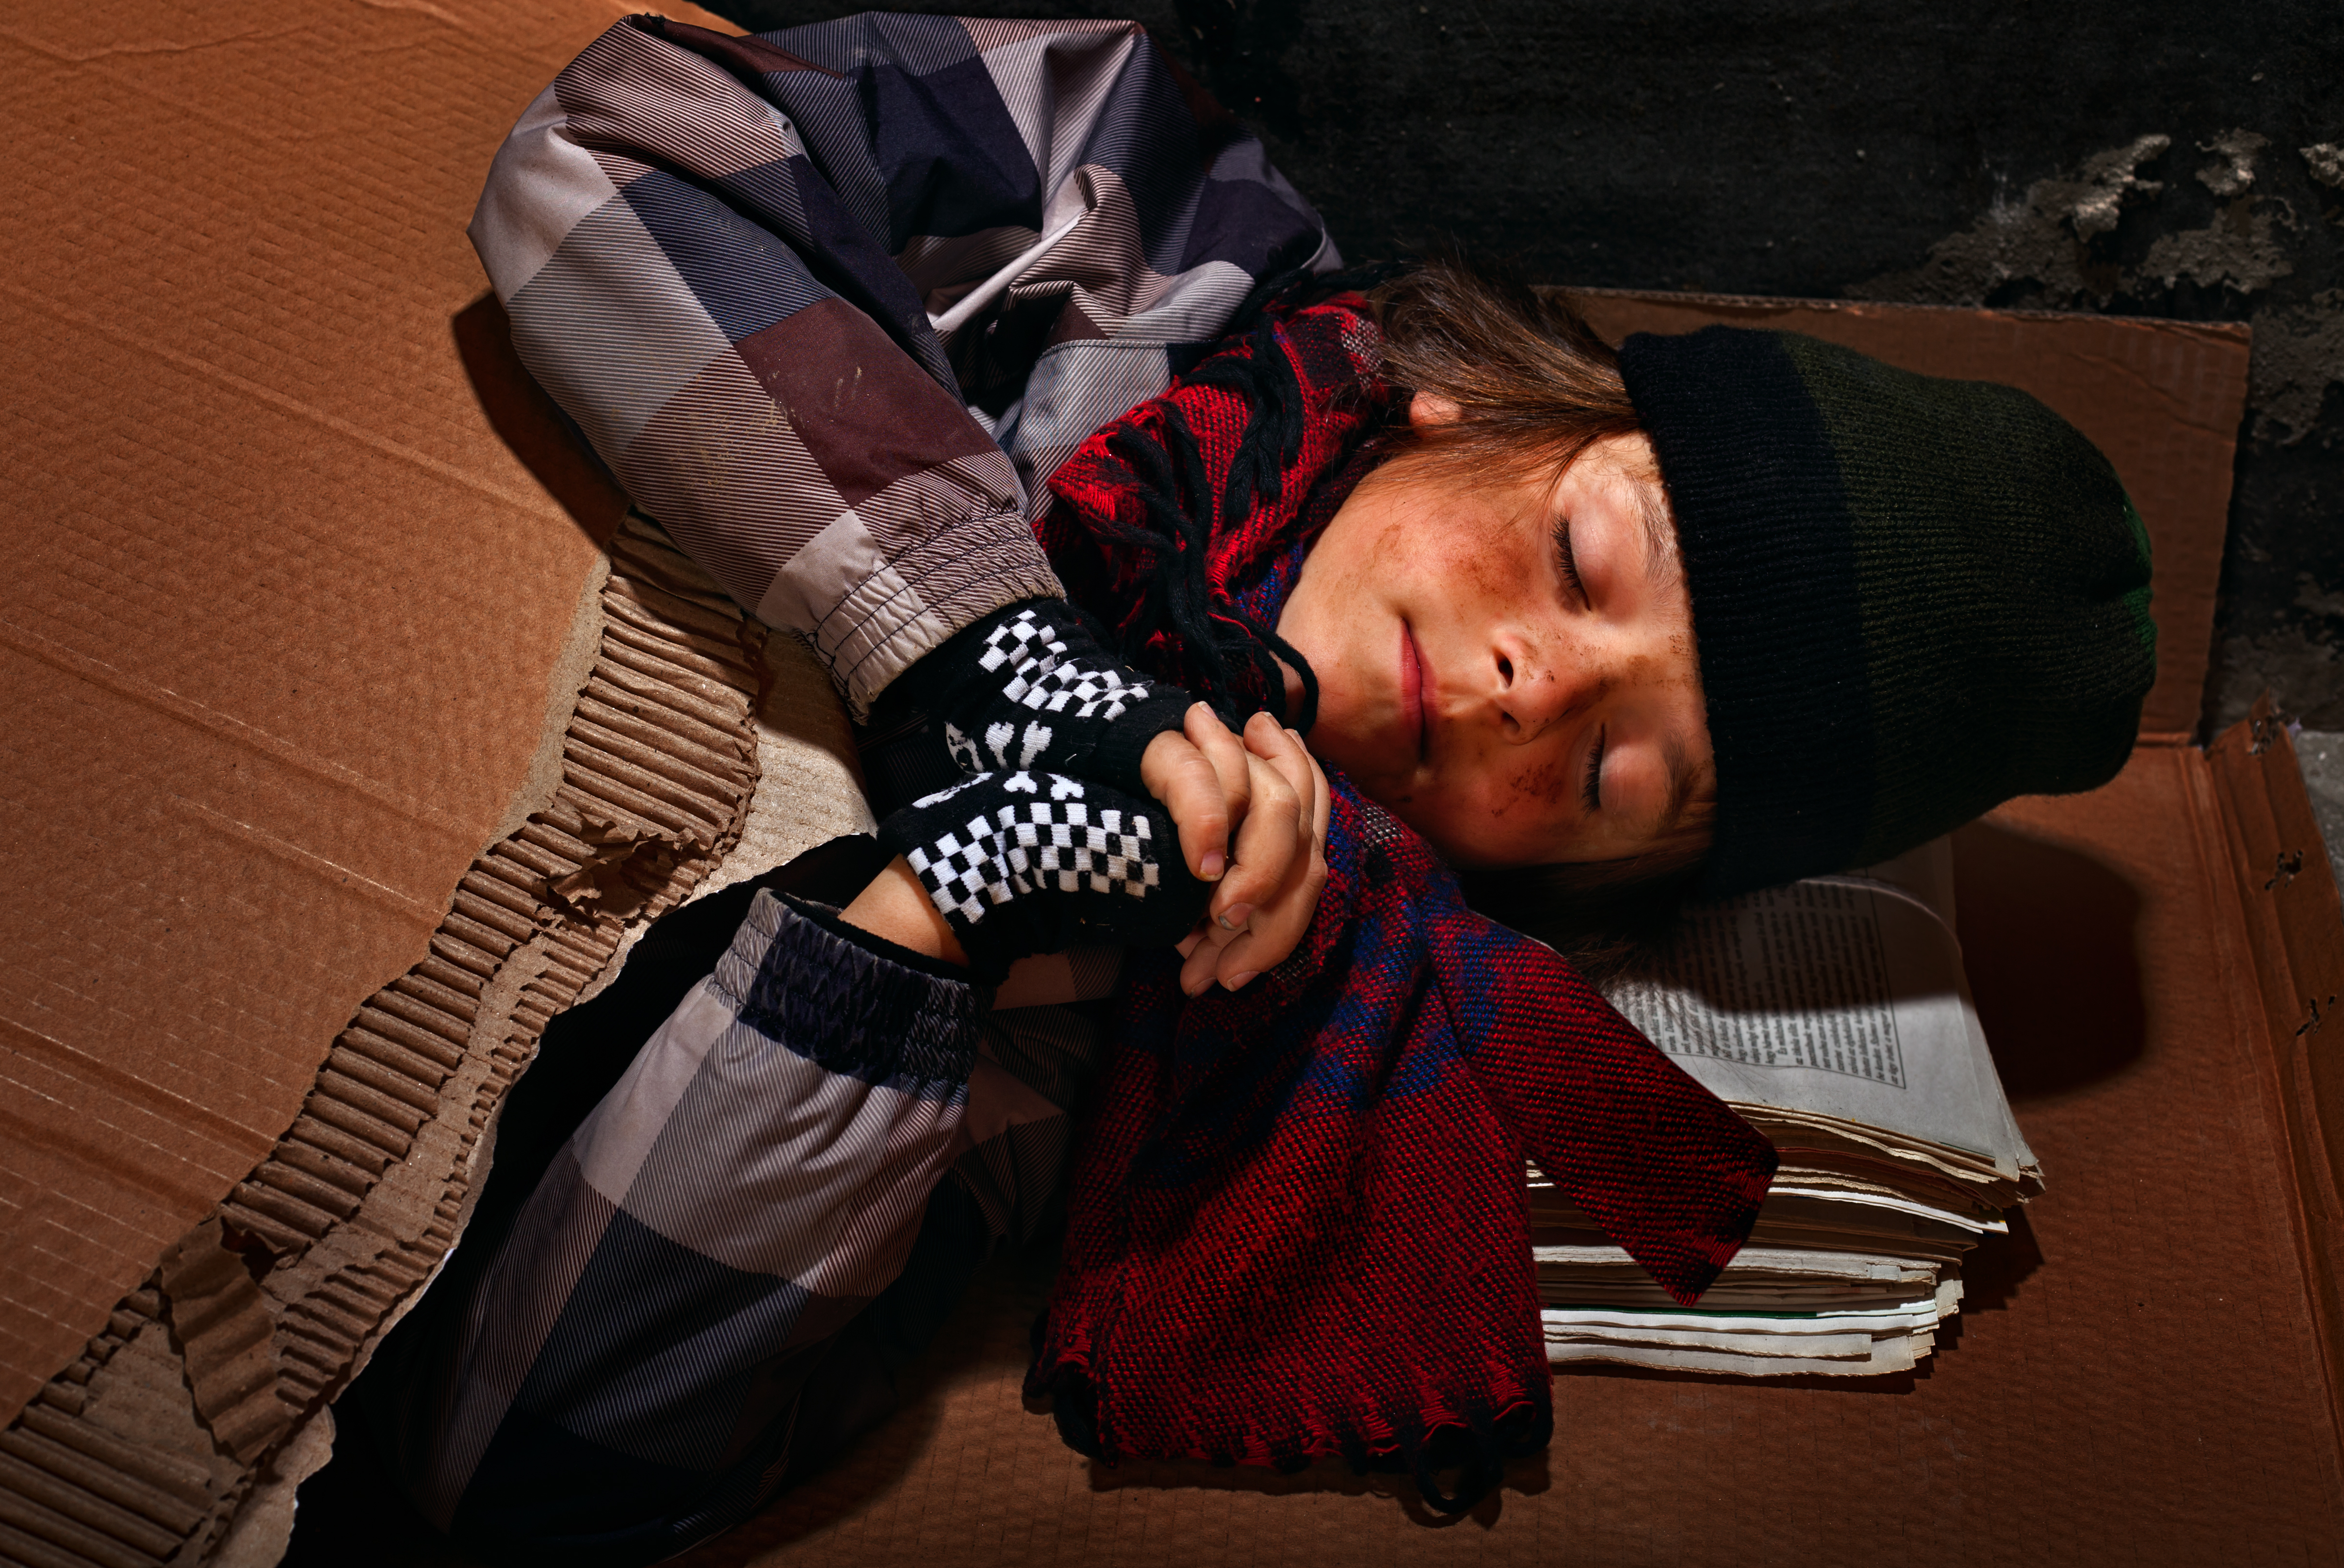 Niño pobre mendigo preparándose para dormir en la calle | Fuente: Shutterstock.com